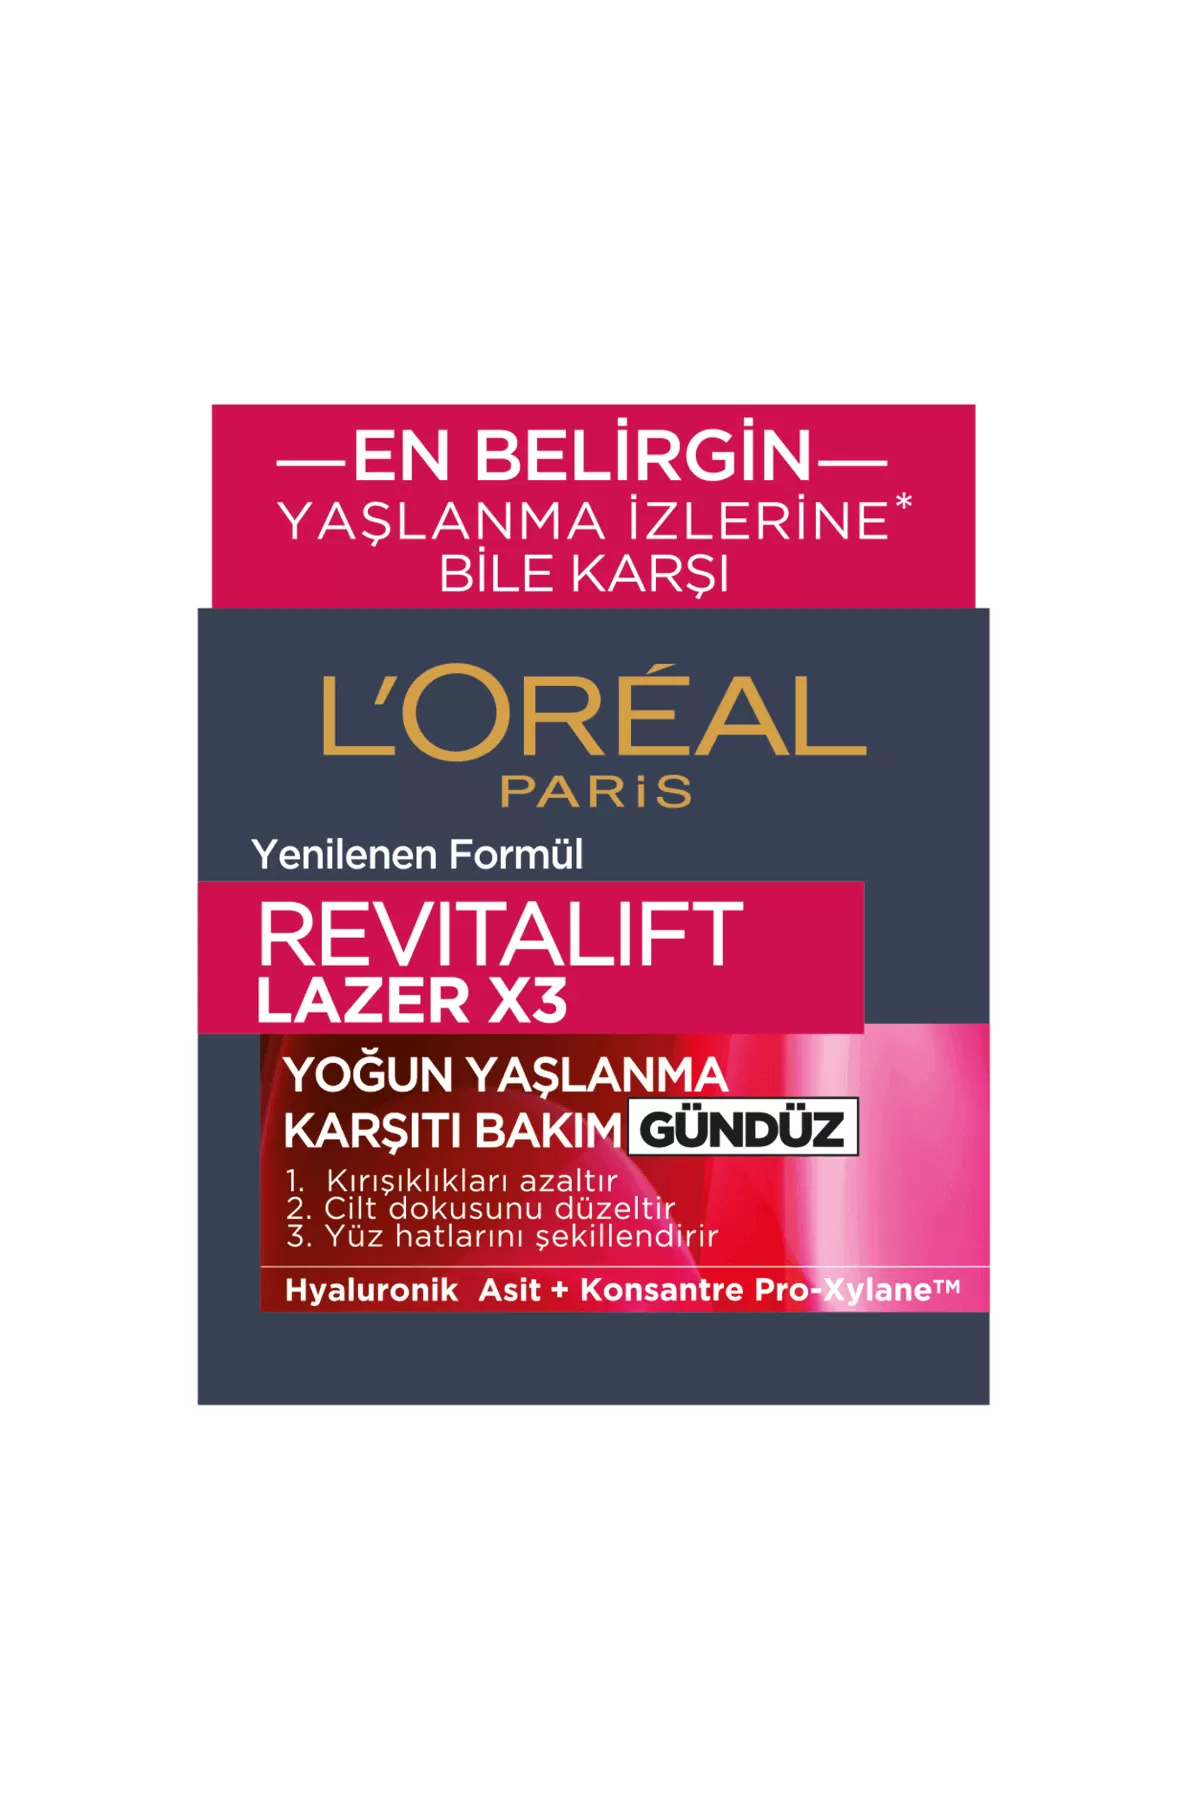 کاهش دهنده چروک ها،ضد پیری،جوان کننده REVITALIFT LAZERX3 لورال پاریس L'Oreal Paris کرم روز لاین لیزر